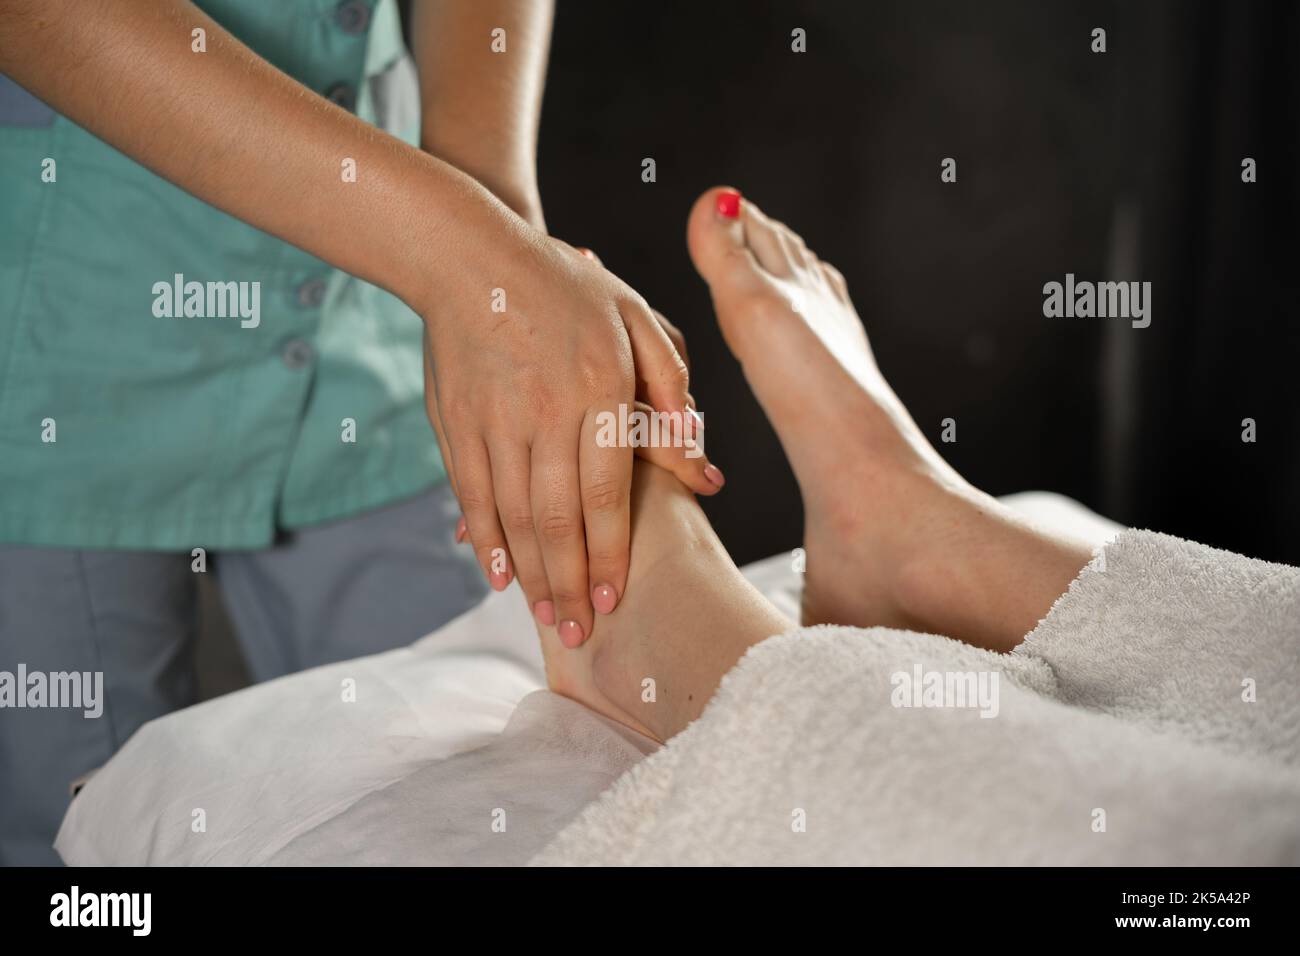 Closeup foot massage in spa salon, beautician undergoing feet massage. Stock Photo